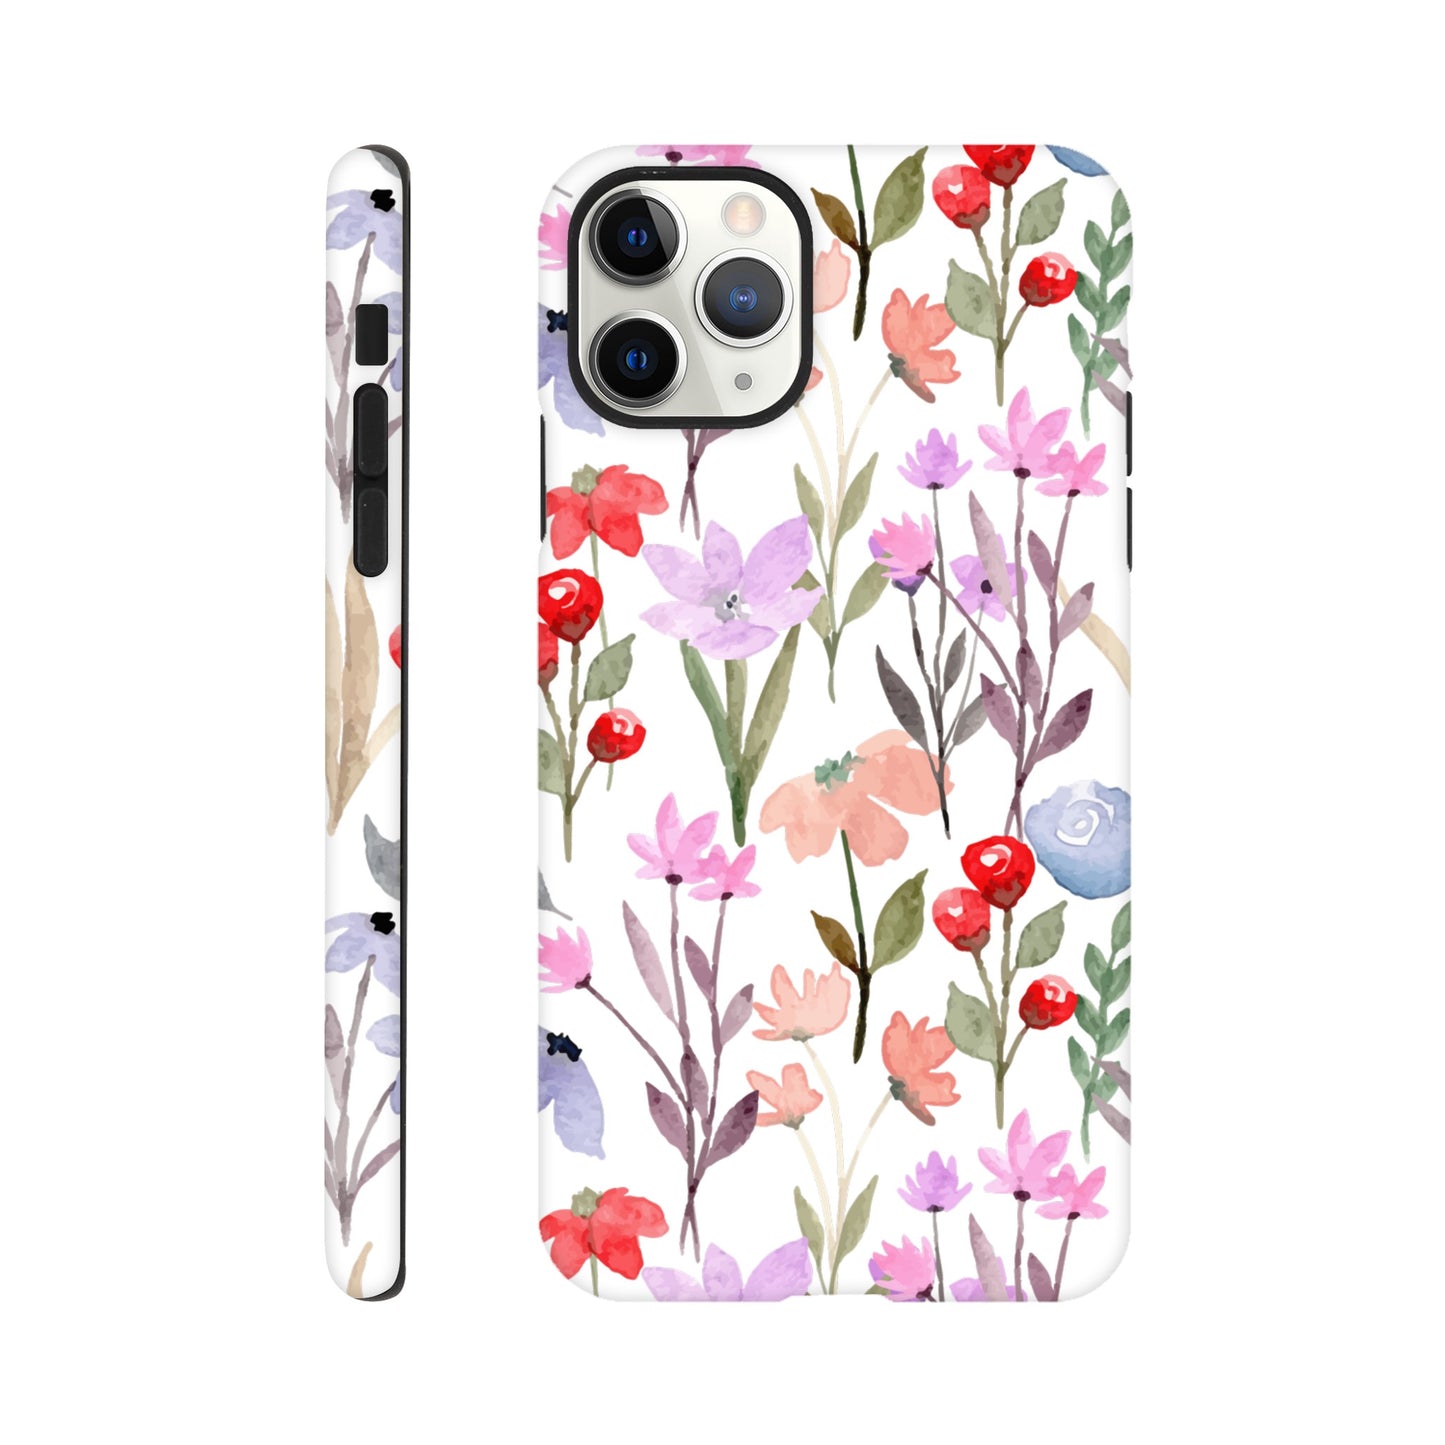 Watercolour Flowers - Phone Tough Case iPhone 11 Pro Max Phone Case Plants